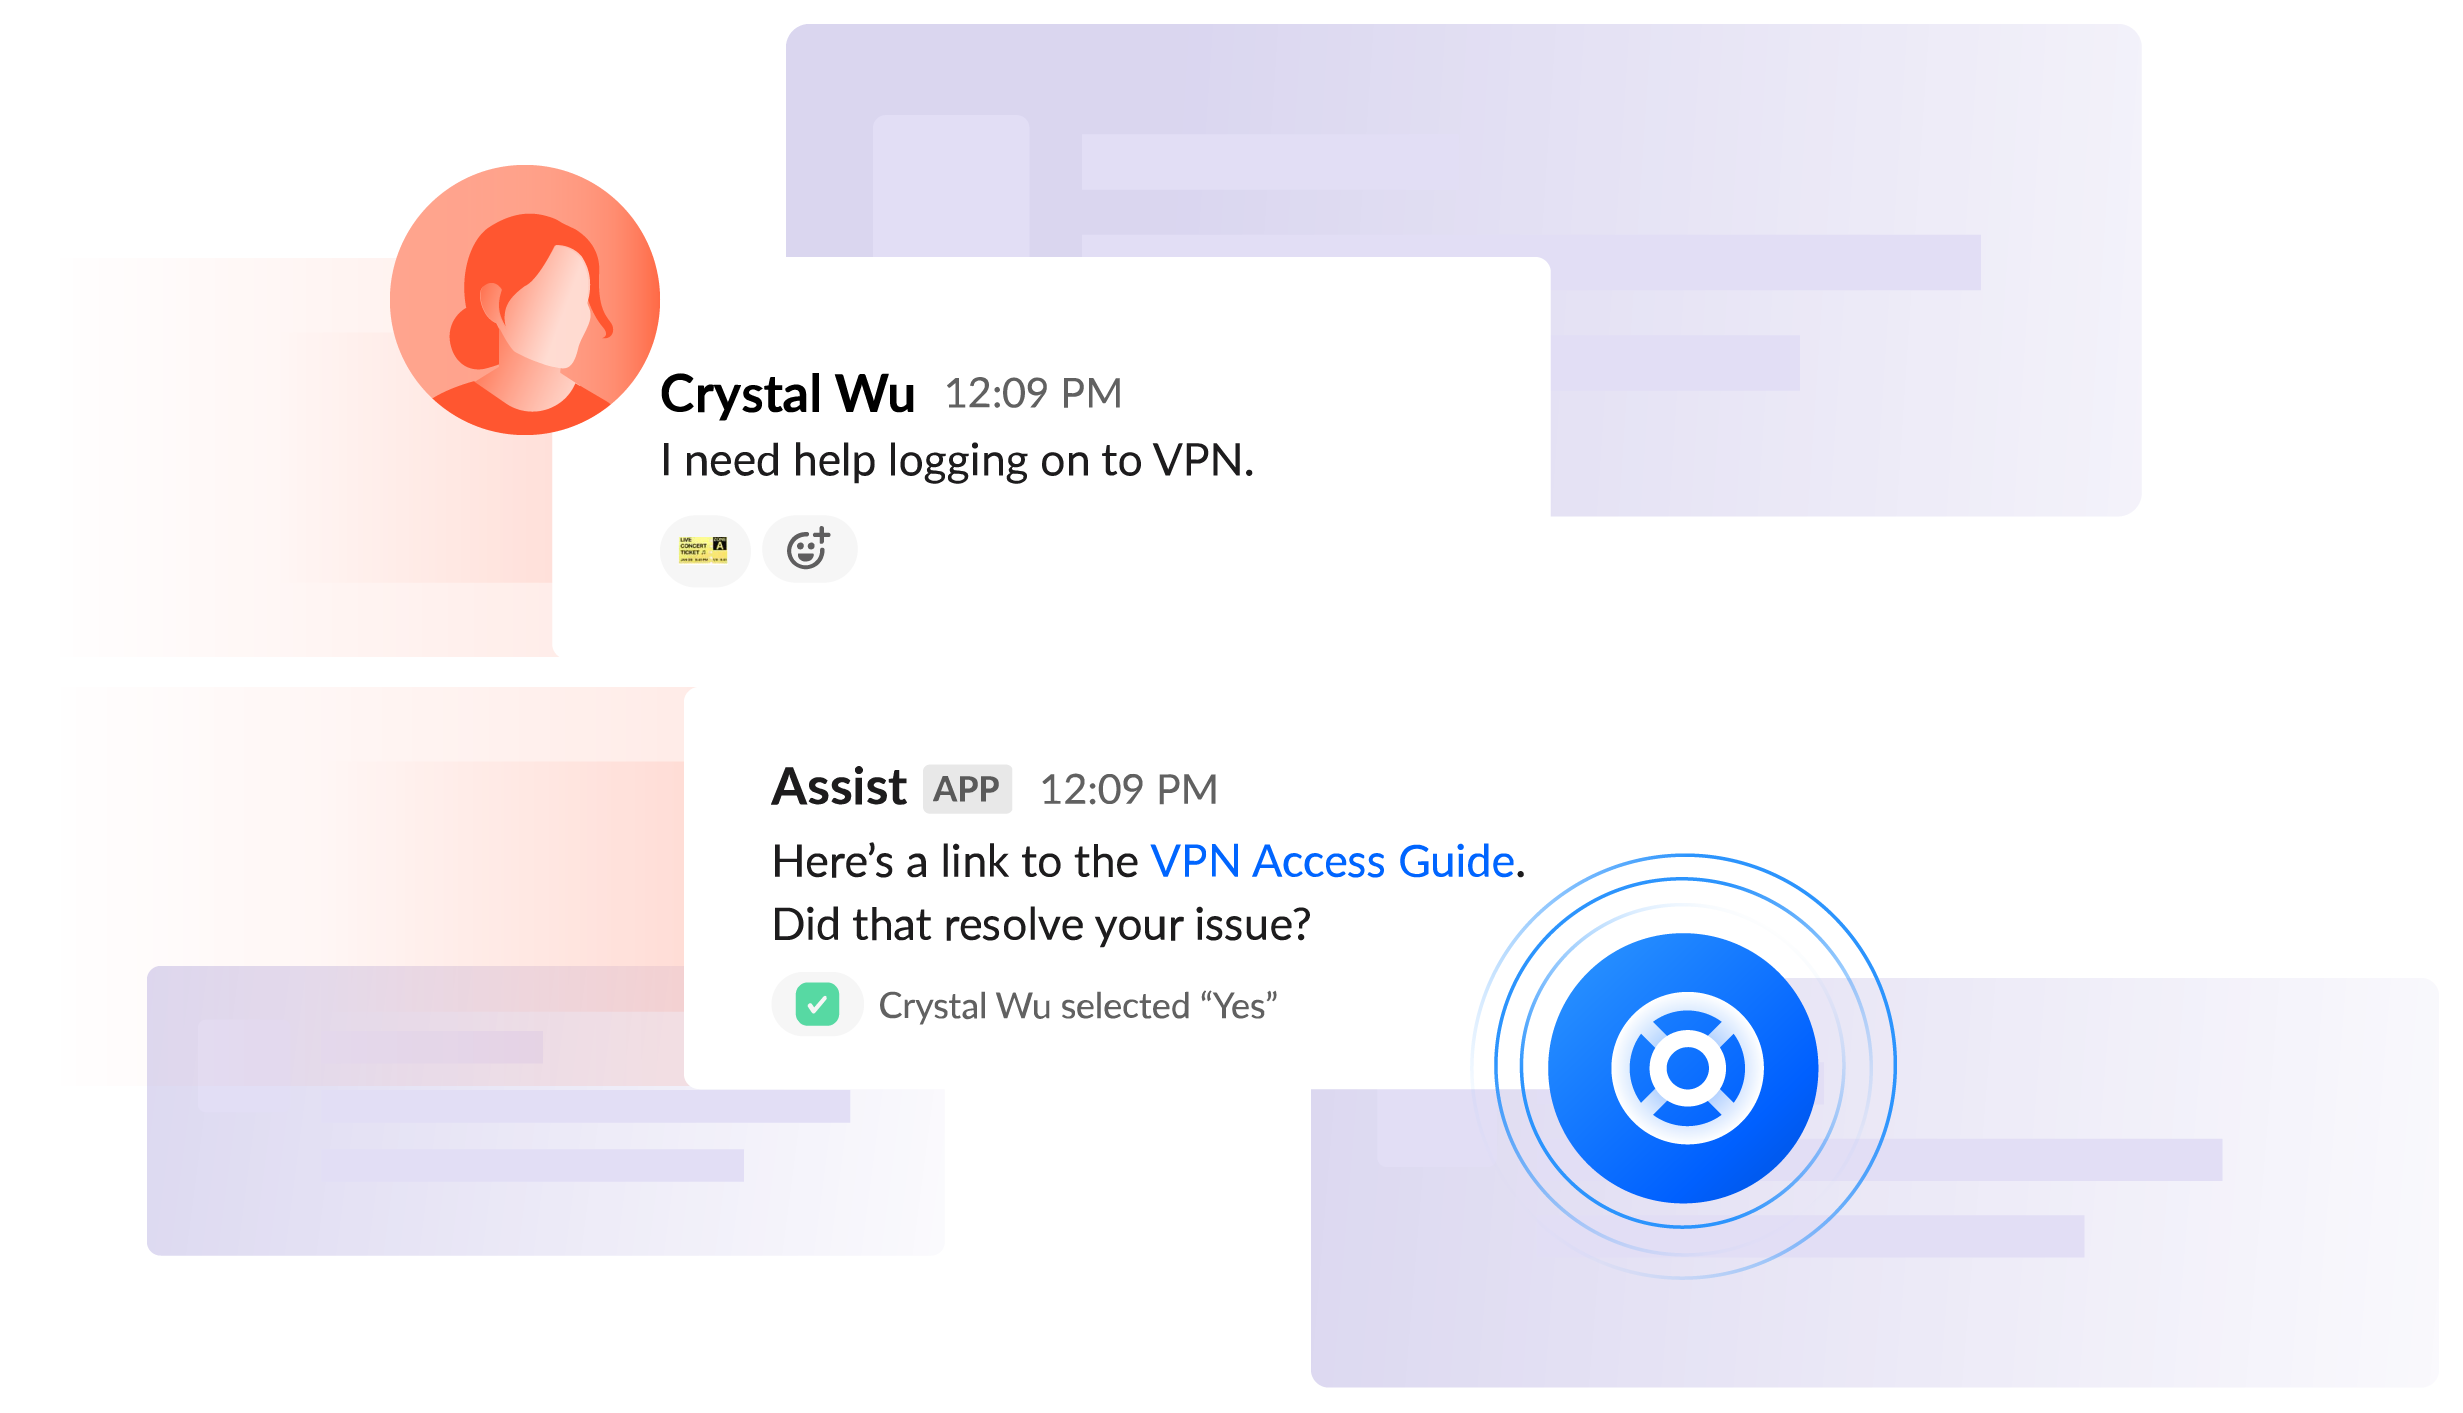 Slack Chat 「VPN へのログインについてサポートが必要です」 - Crystal; 「VPN アクセス ガイドへのリンクはこちらです。これで、問題は解決しましたか?」 - Assist